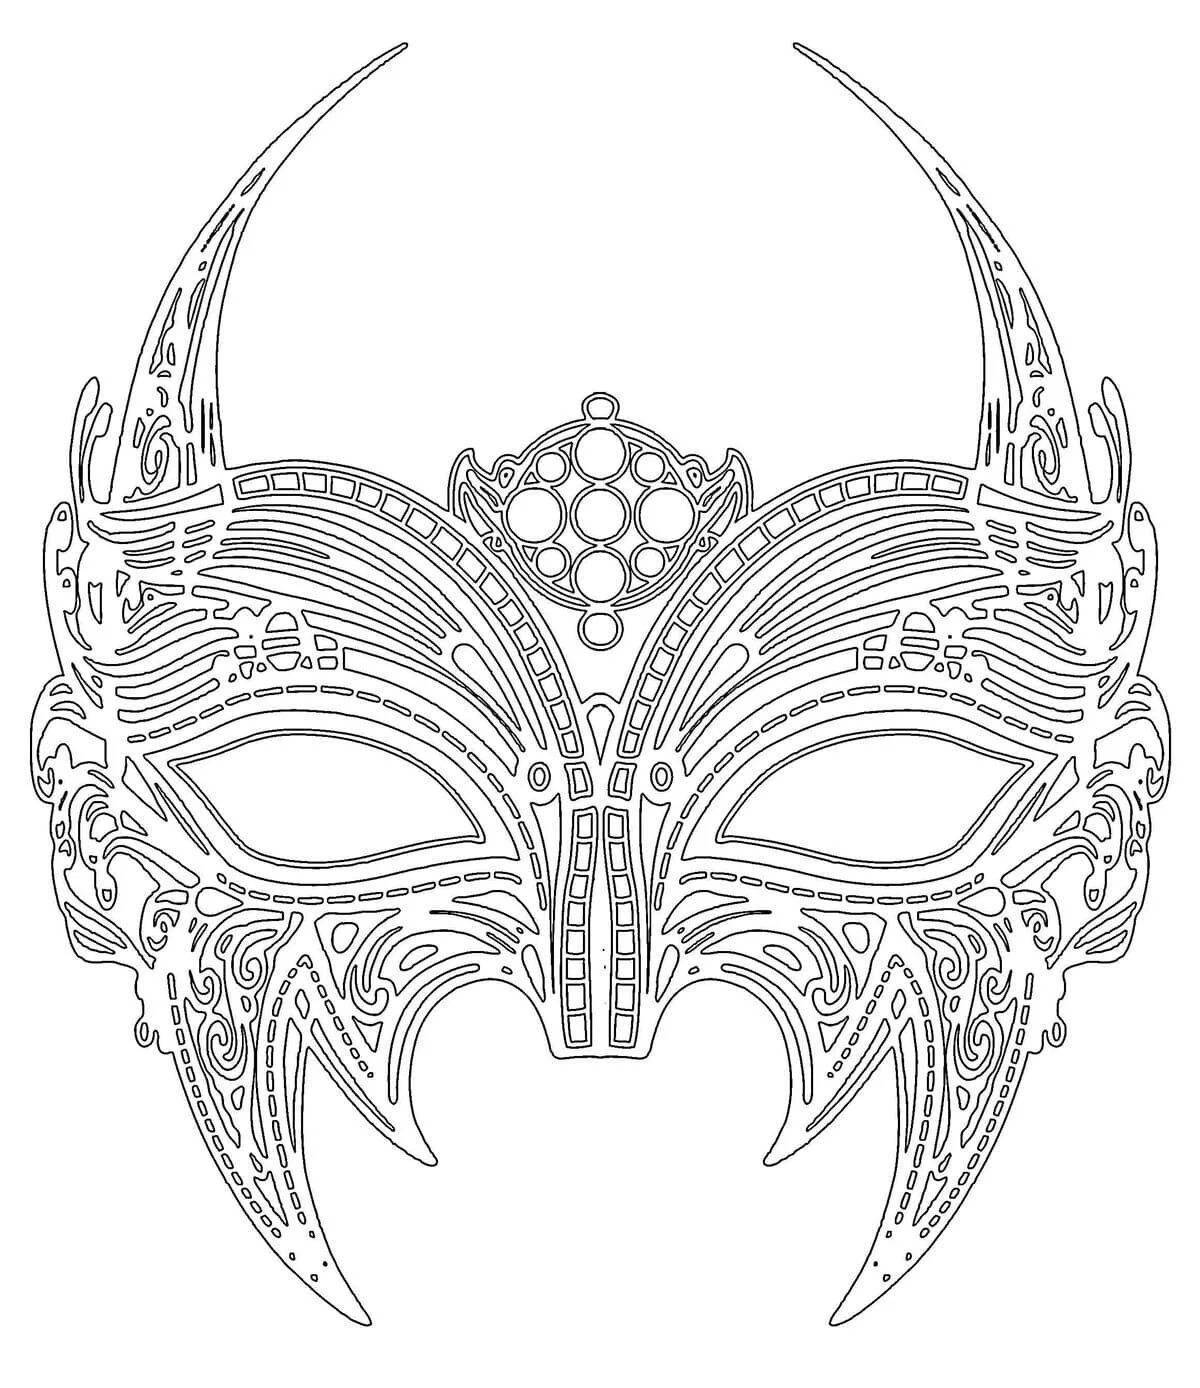 Эскиз маски карнавальной